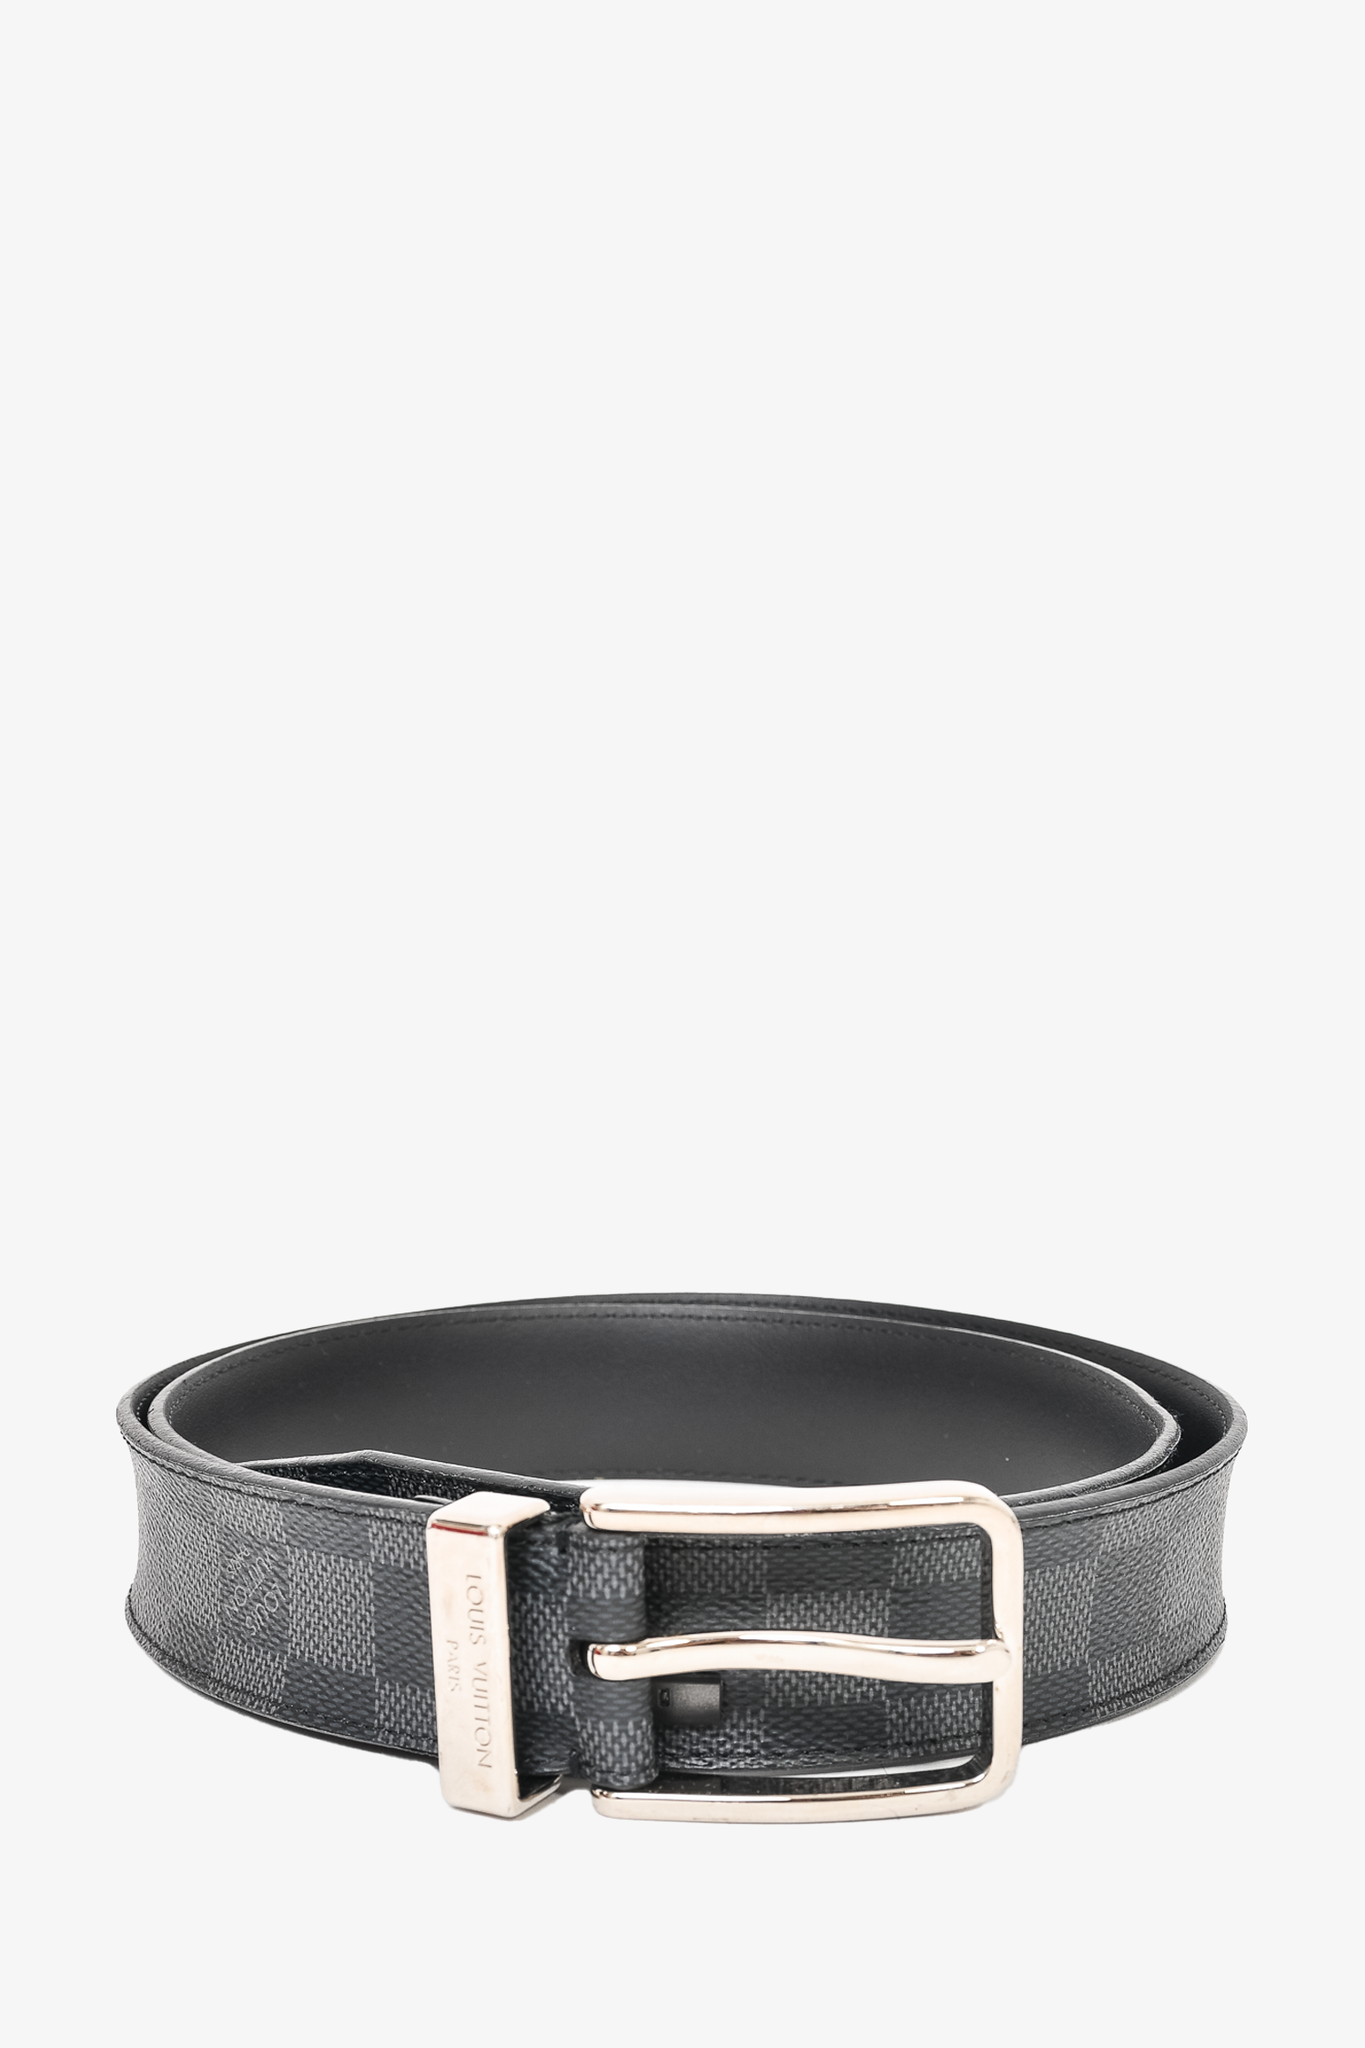 Louis Vuitton Inventeur Belt Damier Graphite  Black louis vuitton belt,  Louis vuitton accessories, Suede leather belt